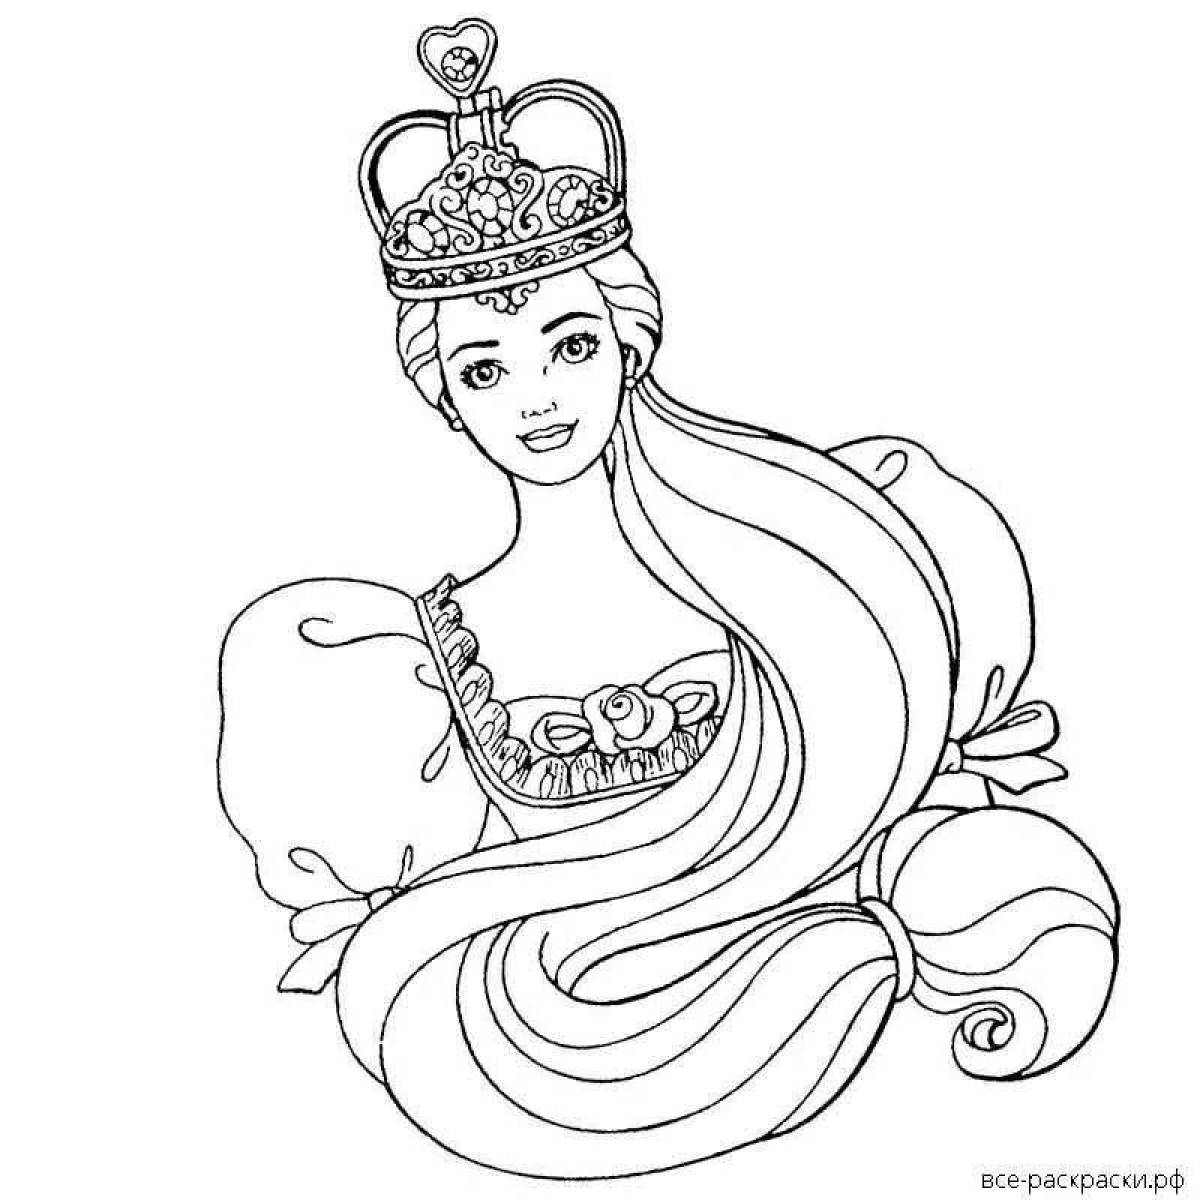 Раскраски принцес с короной